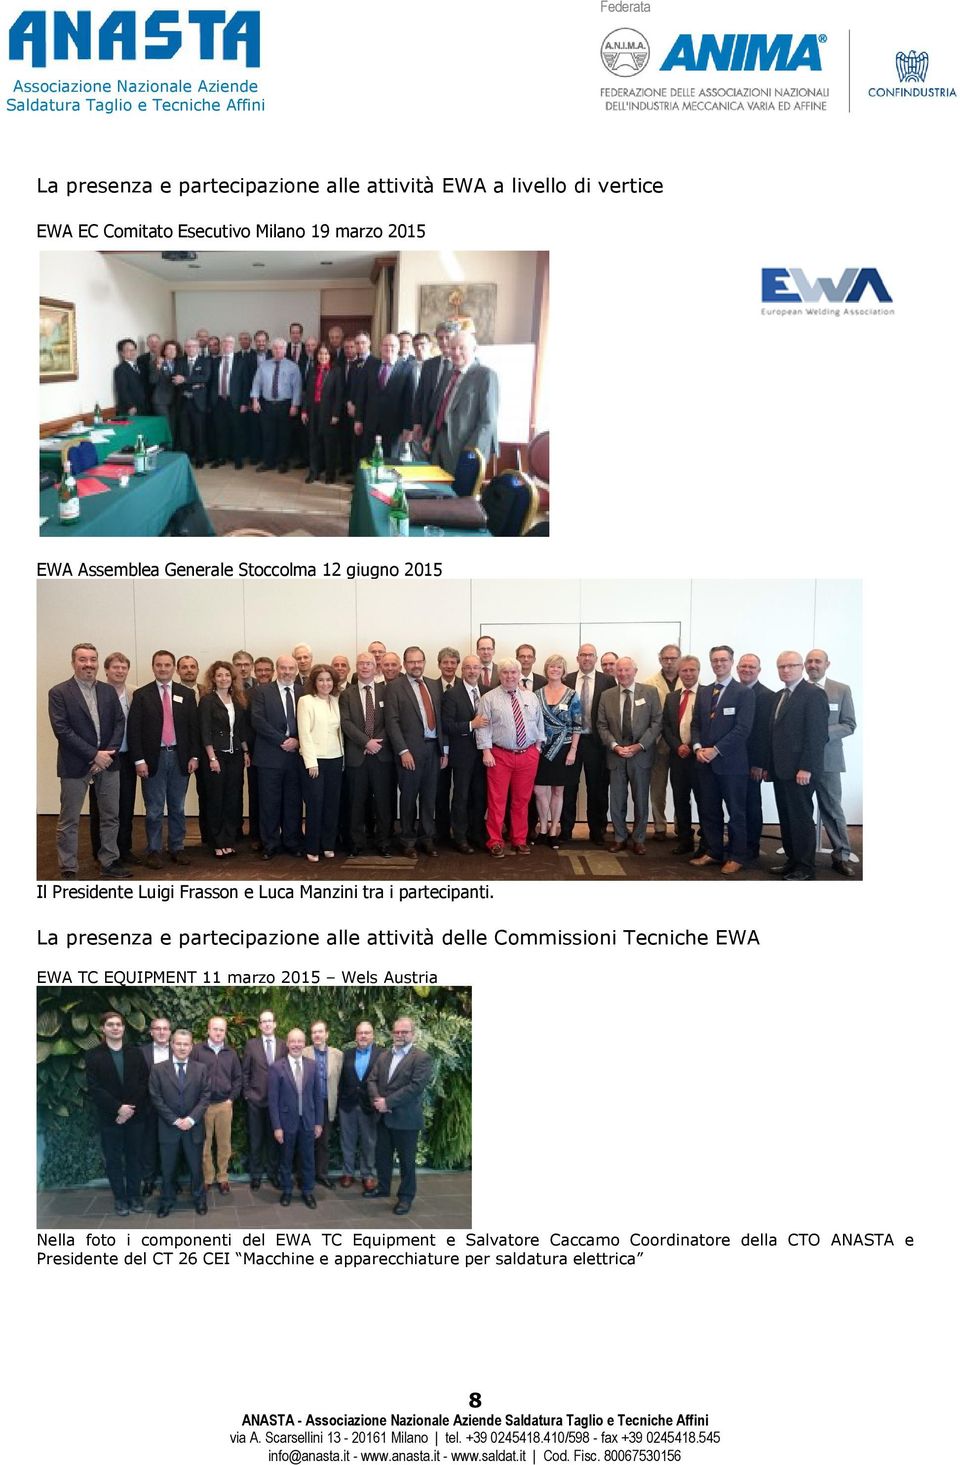 La presenza e partecipazione alle attività delle Commissioni Tecniche EWA EWA TC EQUIPMENT 11 marzo 2015 Wels Austria Nella foto i